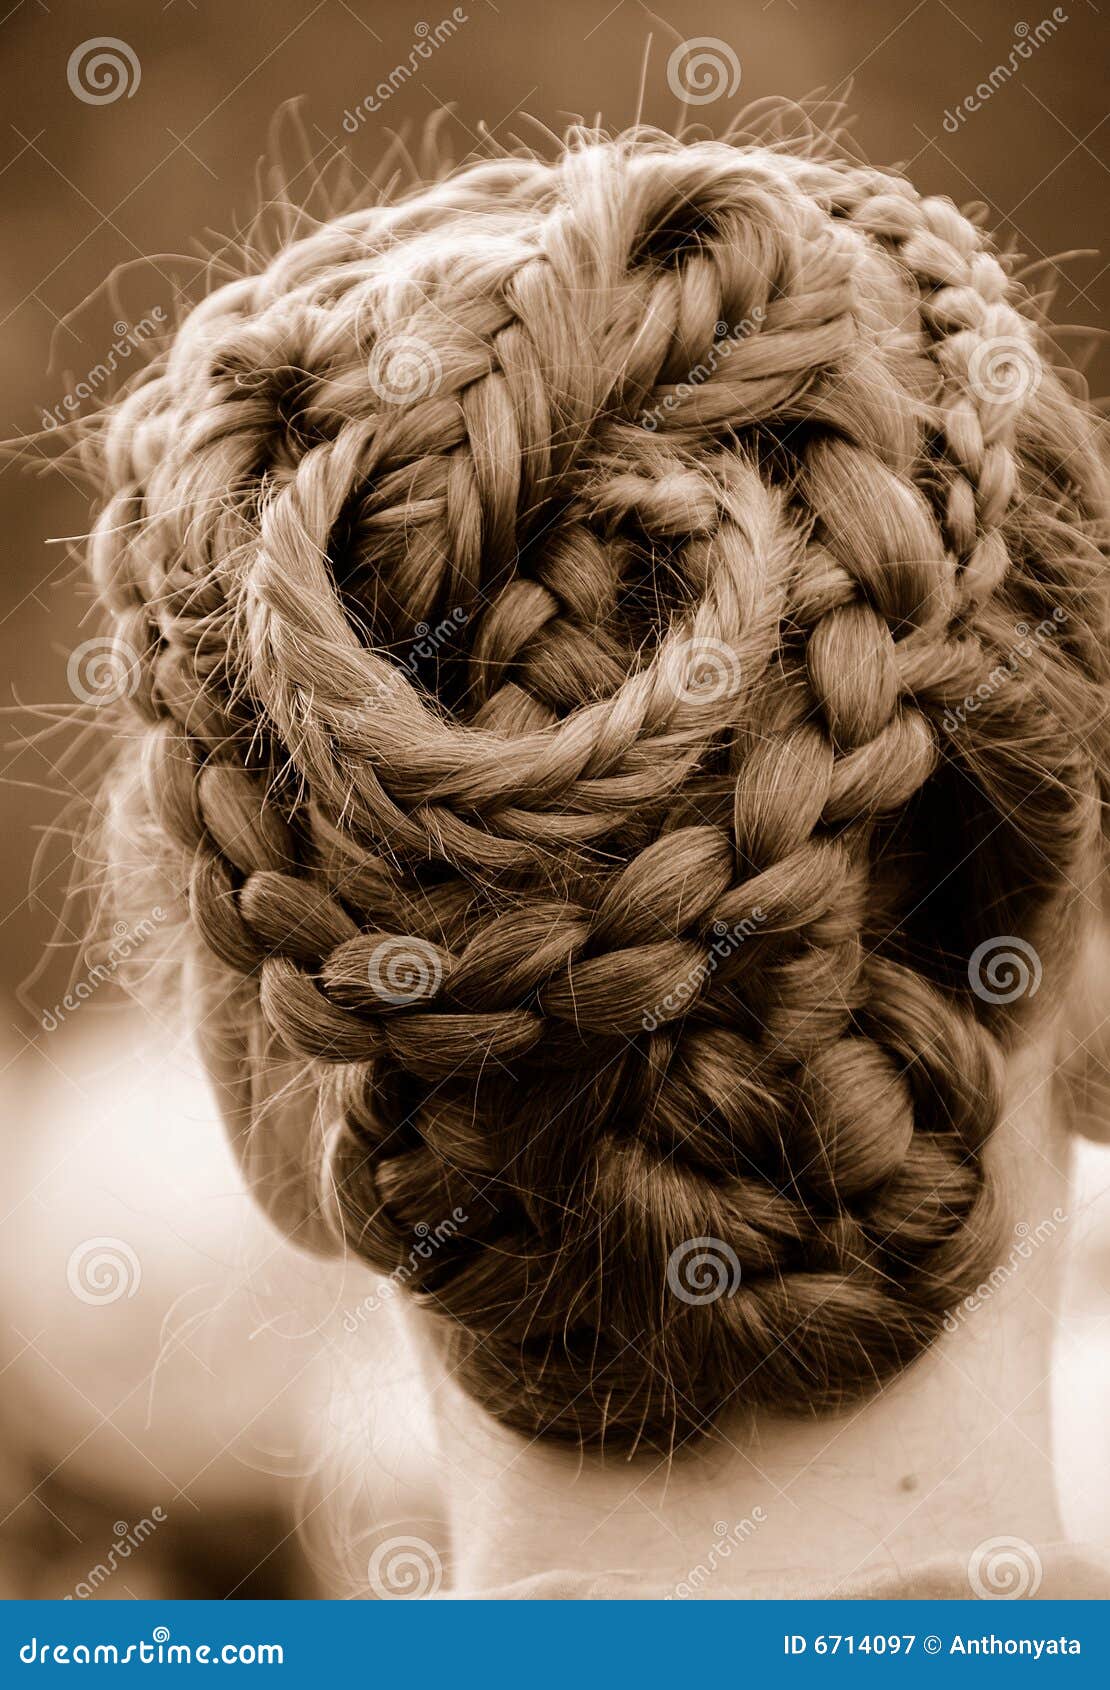 intricate braided hair